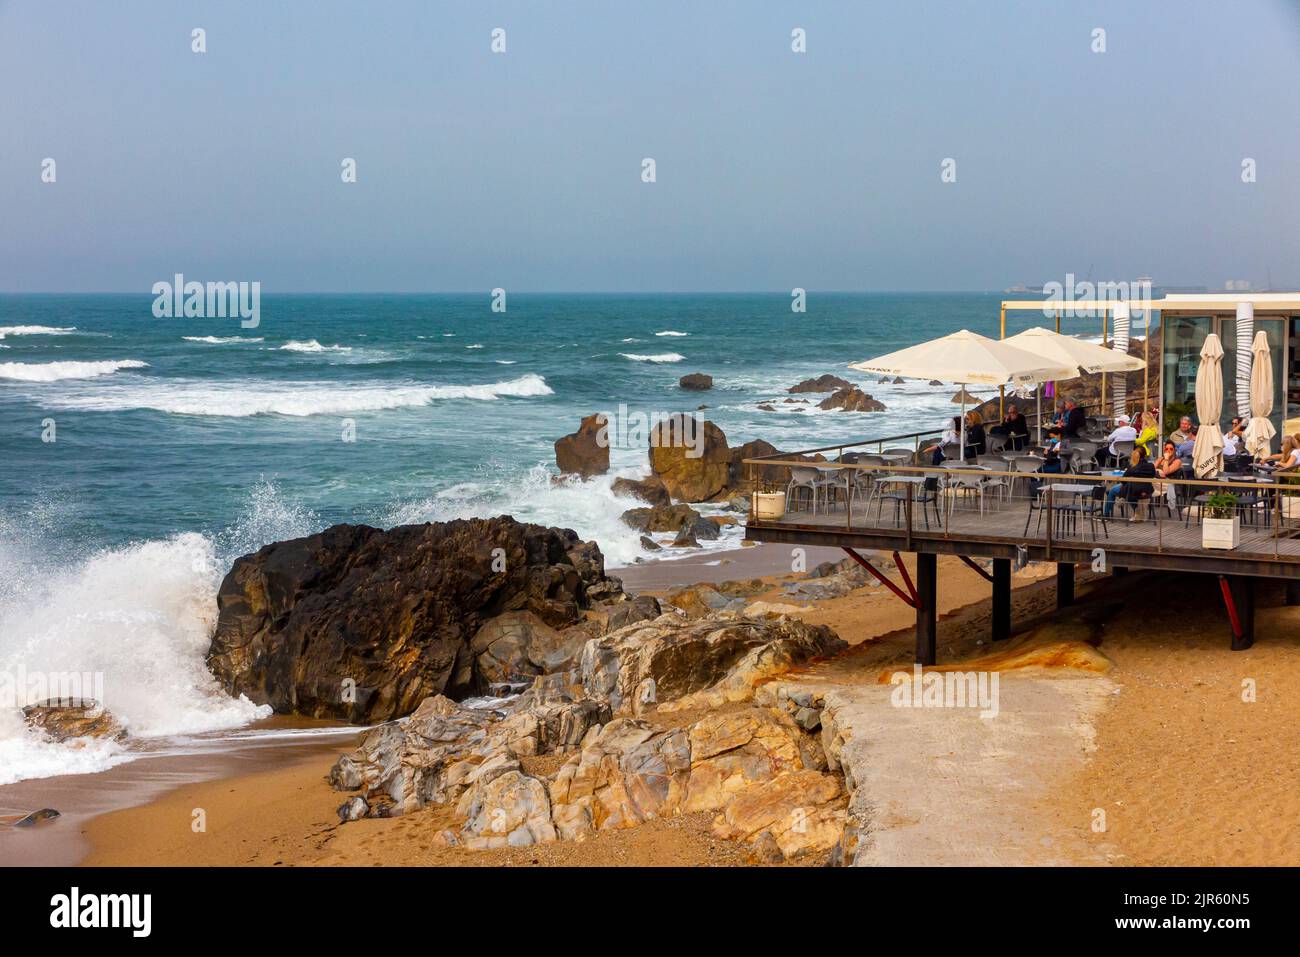 Onde che si schiantano su una spiaggia vicino a un caffè e bar sulla costa atlantica a Foz do Douro vicino a Porto, nel nord del Portogallo. Foto Stock